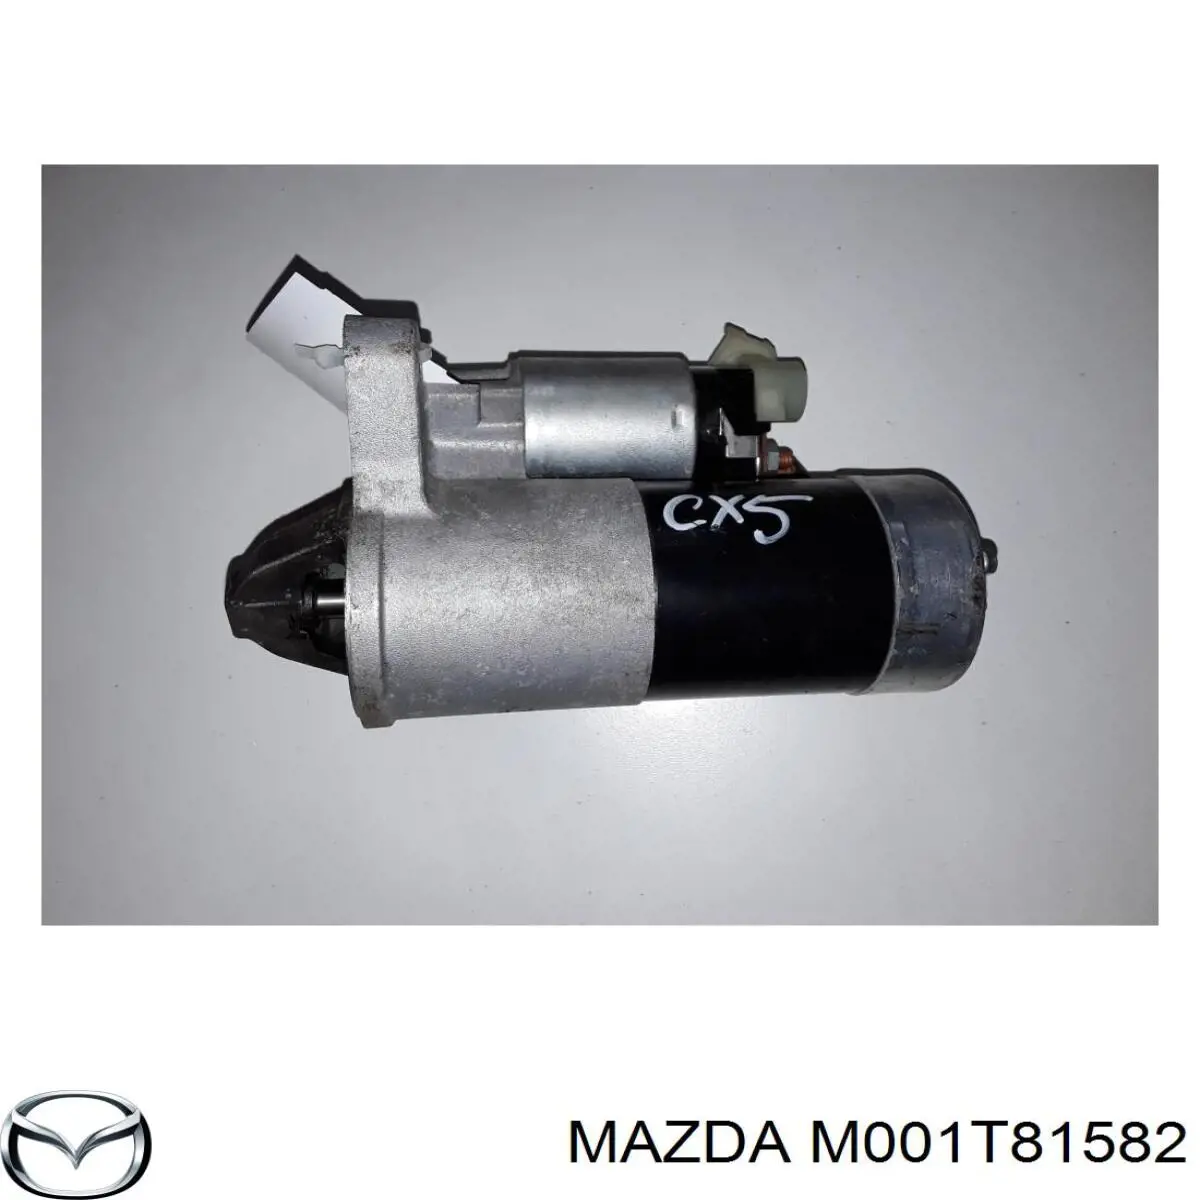 M001T81582 Mazda motor de arranque